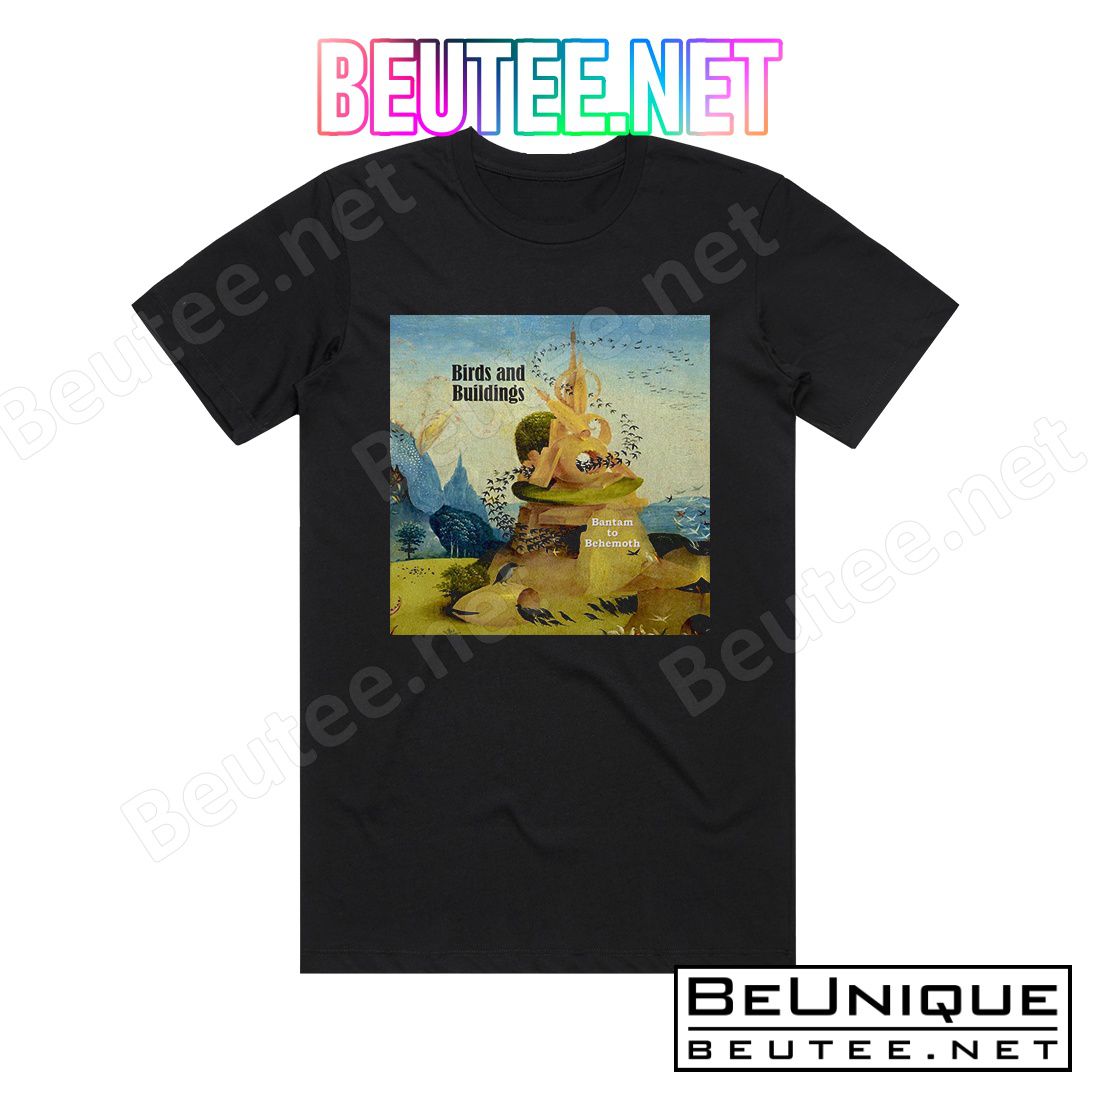 Birds and Buildings Bantam To Behemoth Album Cover T-Shirt